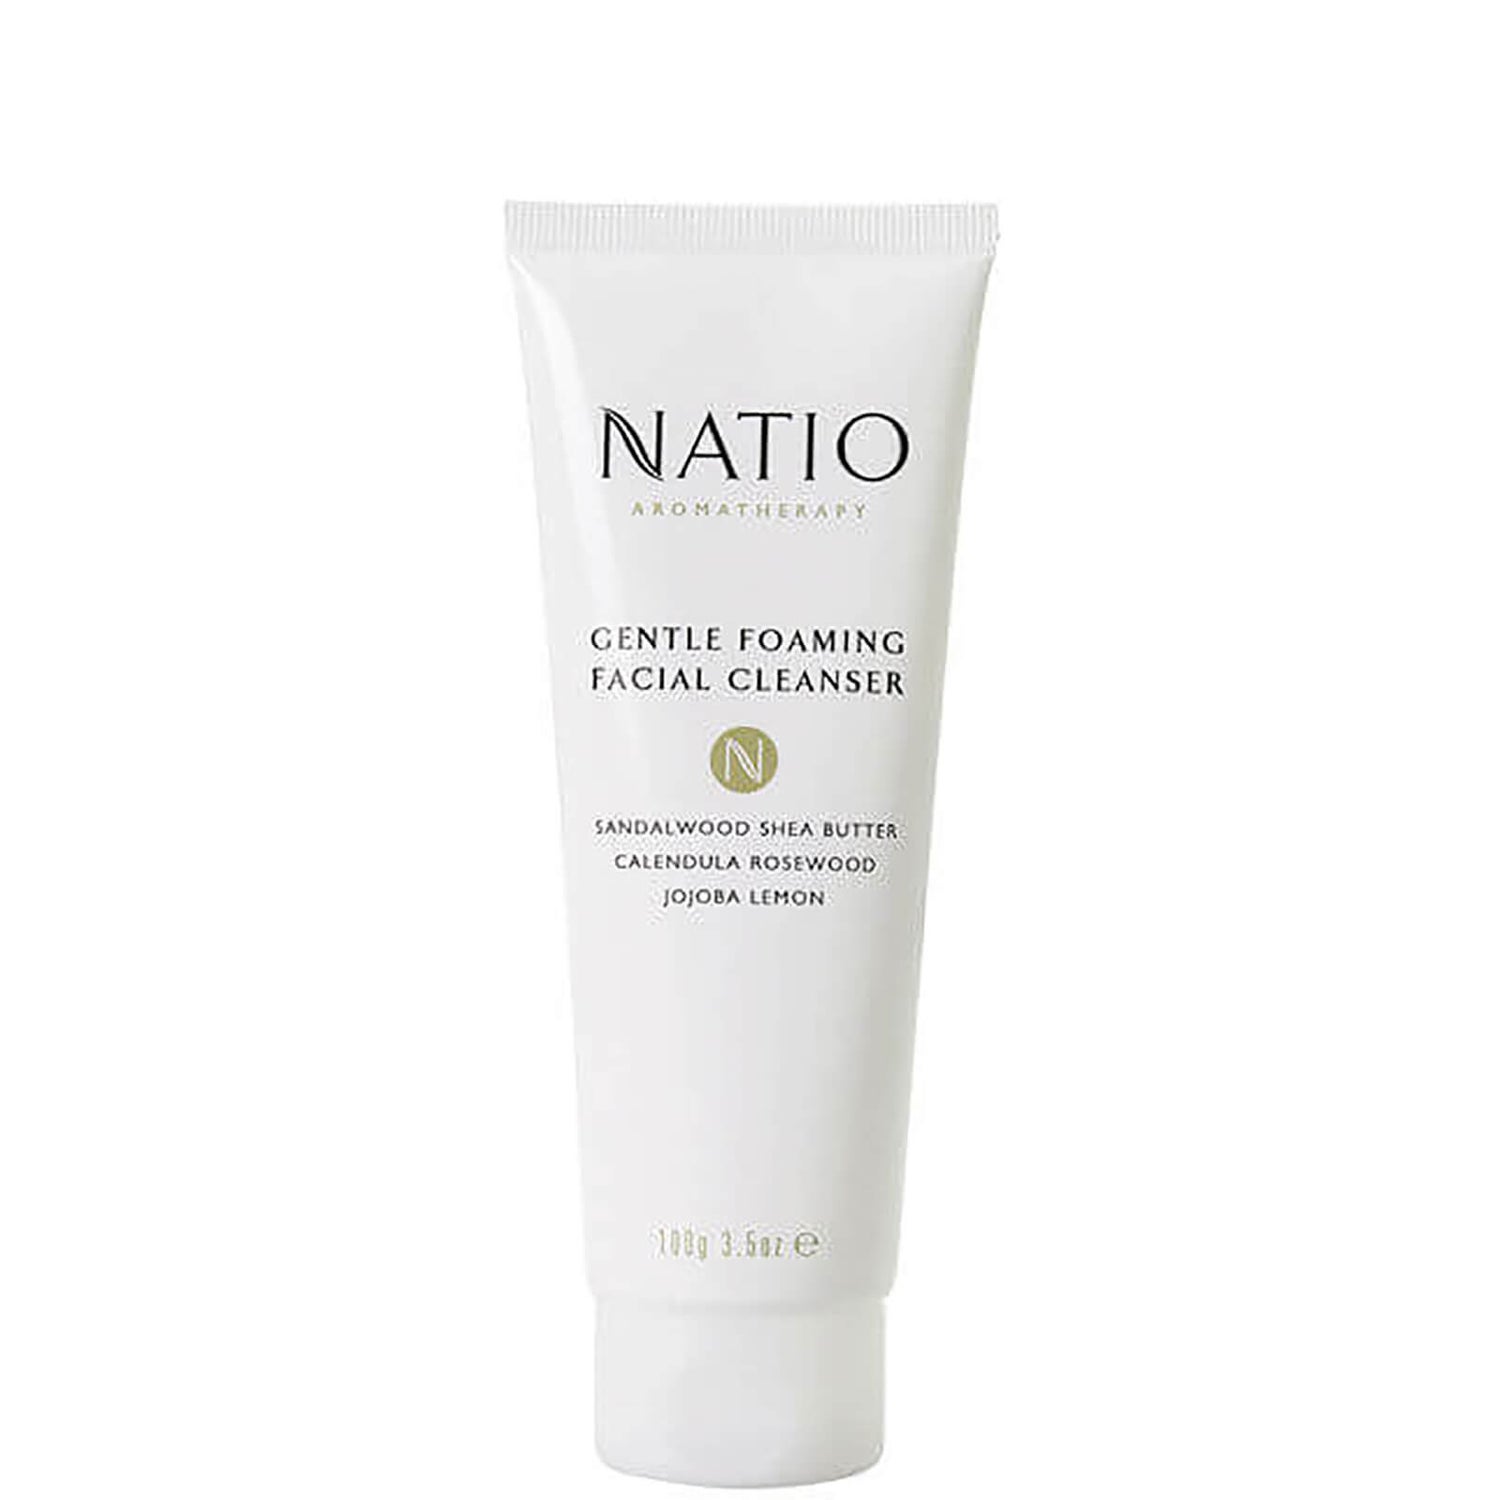 Natio Gentle Foaming Facial Cleanser pianka oczyszczająca do twarzy (100 g)